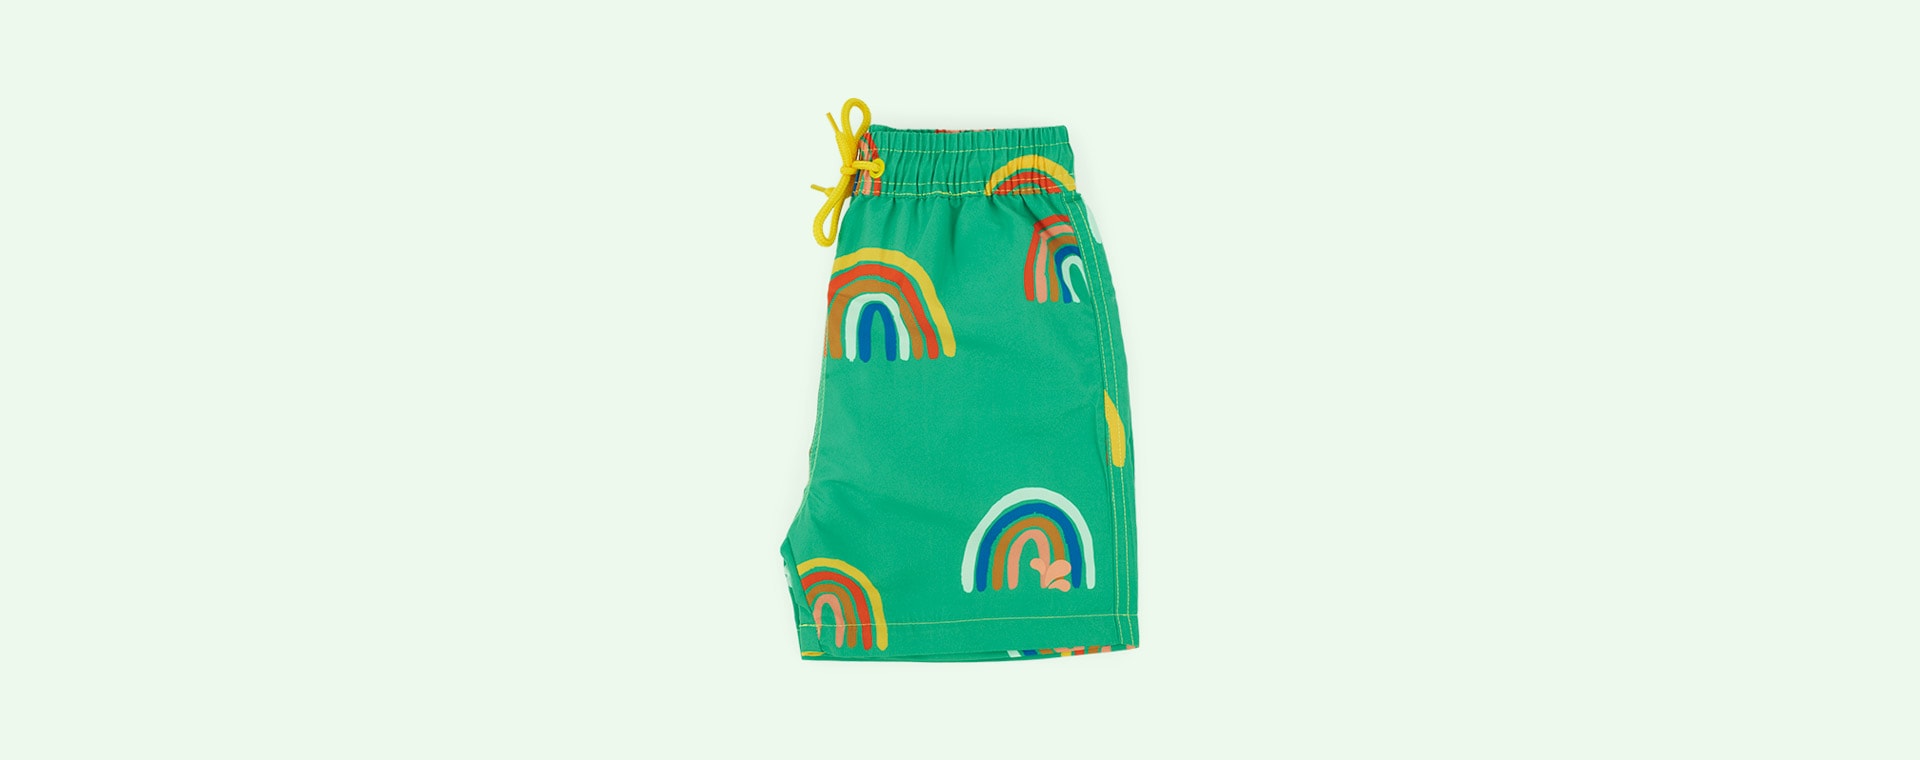 Green Rainbow Muddy Puddles UV Protective Shorts